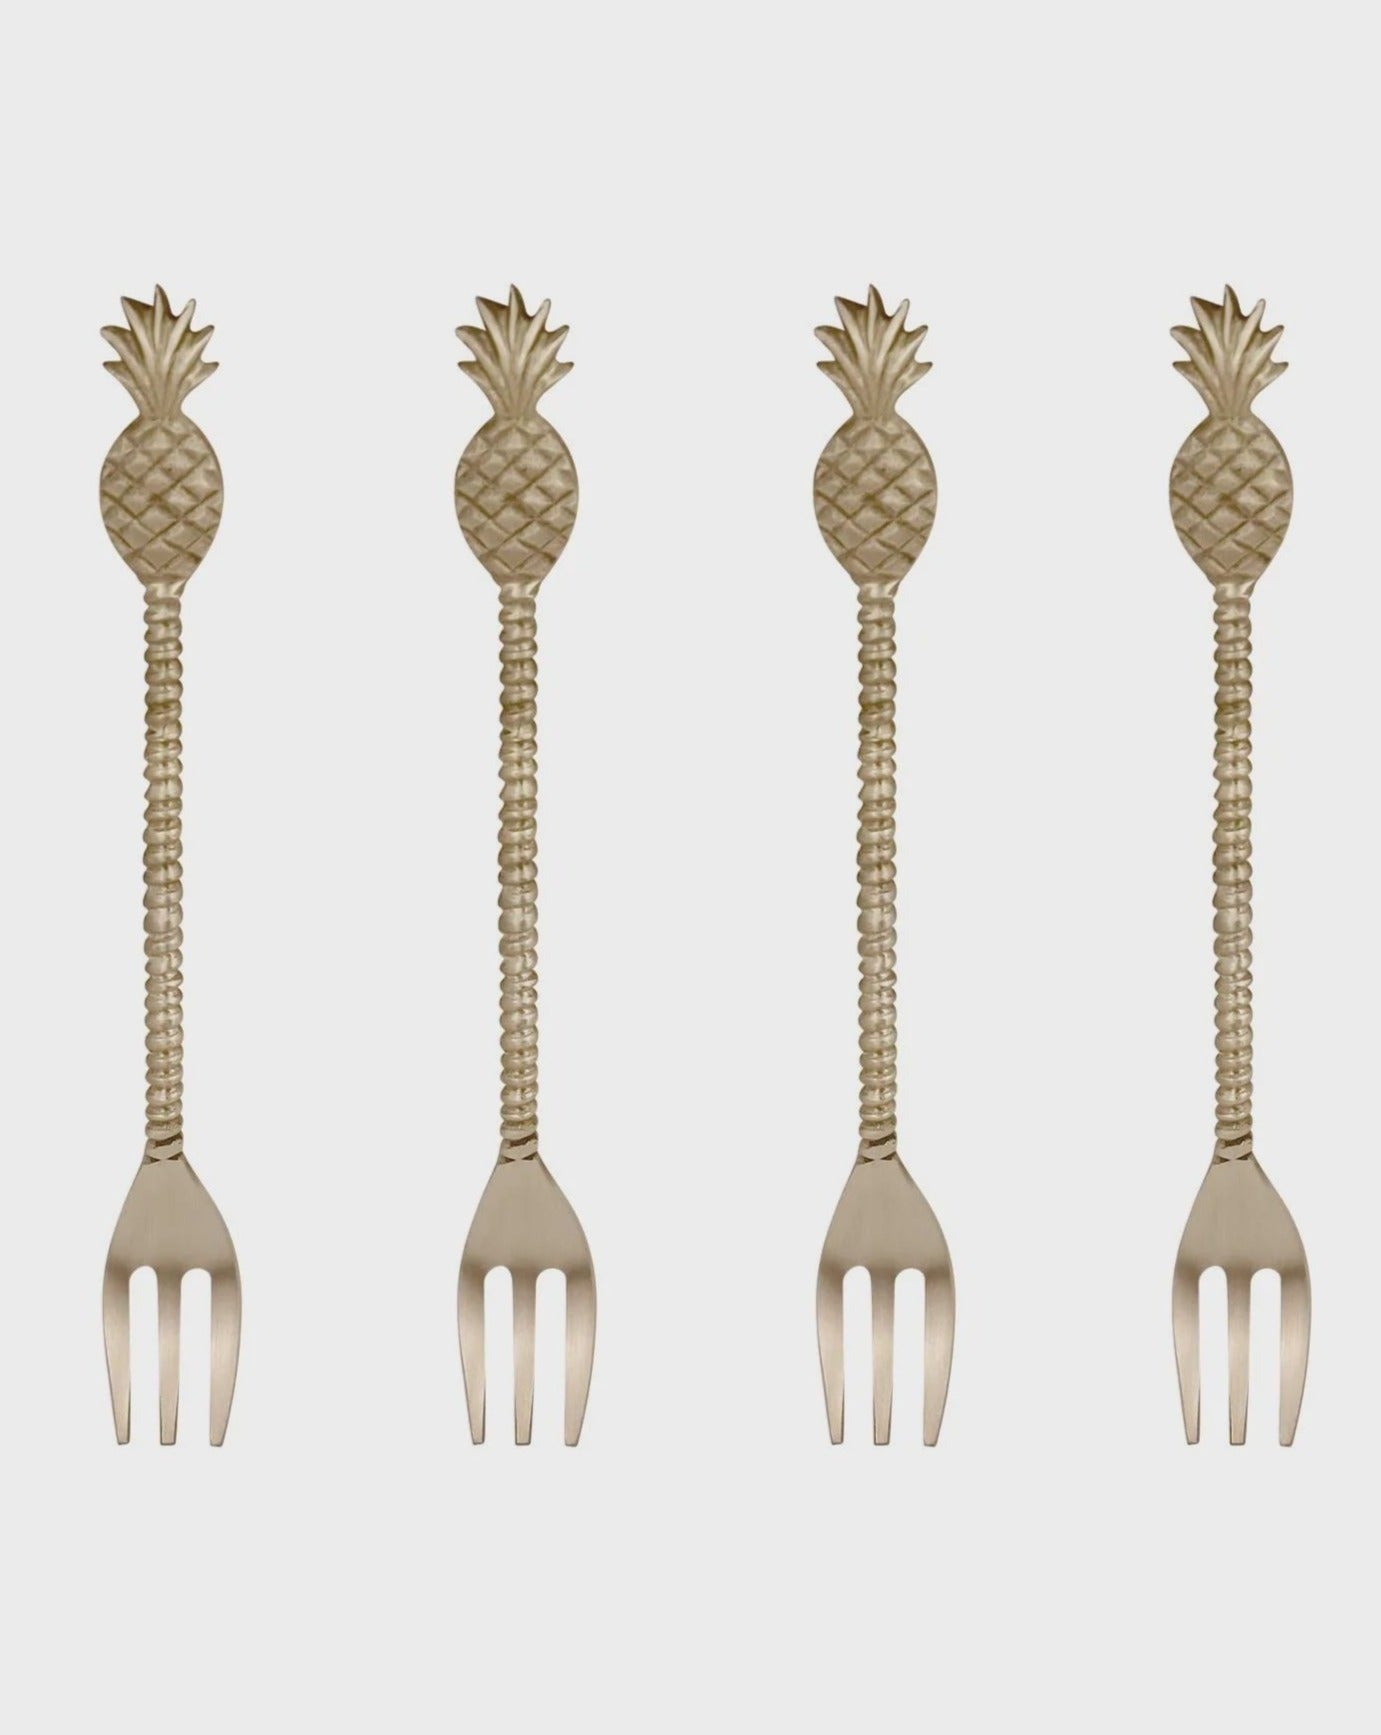 Madras Link Pineapple Brass Forks - Set of 4